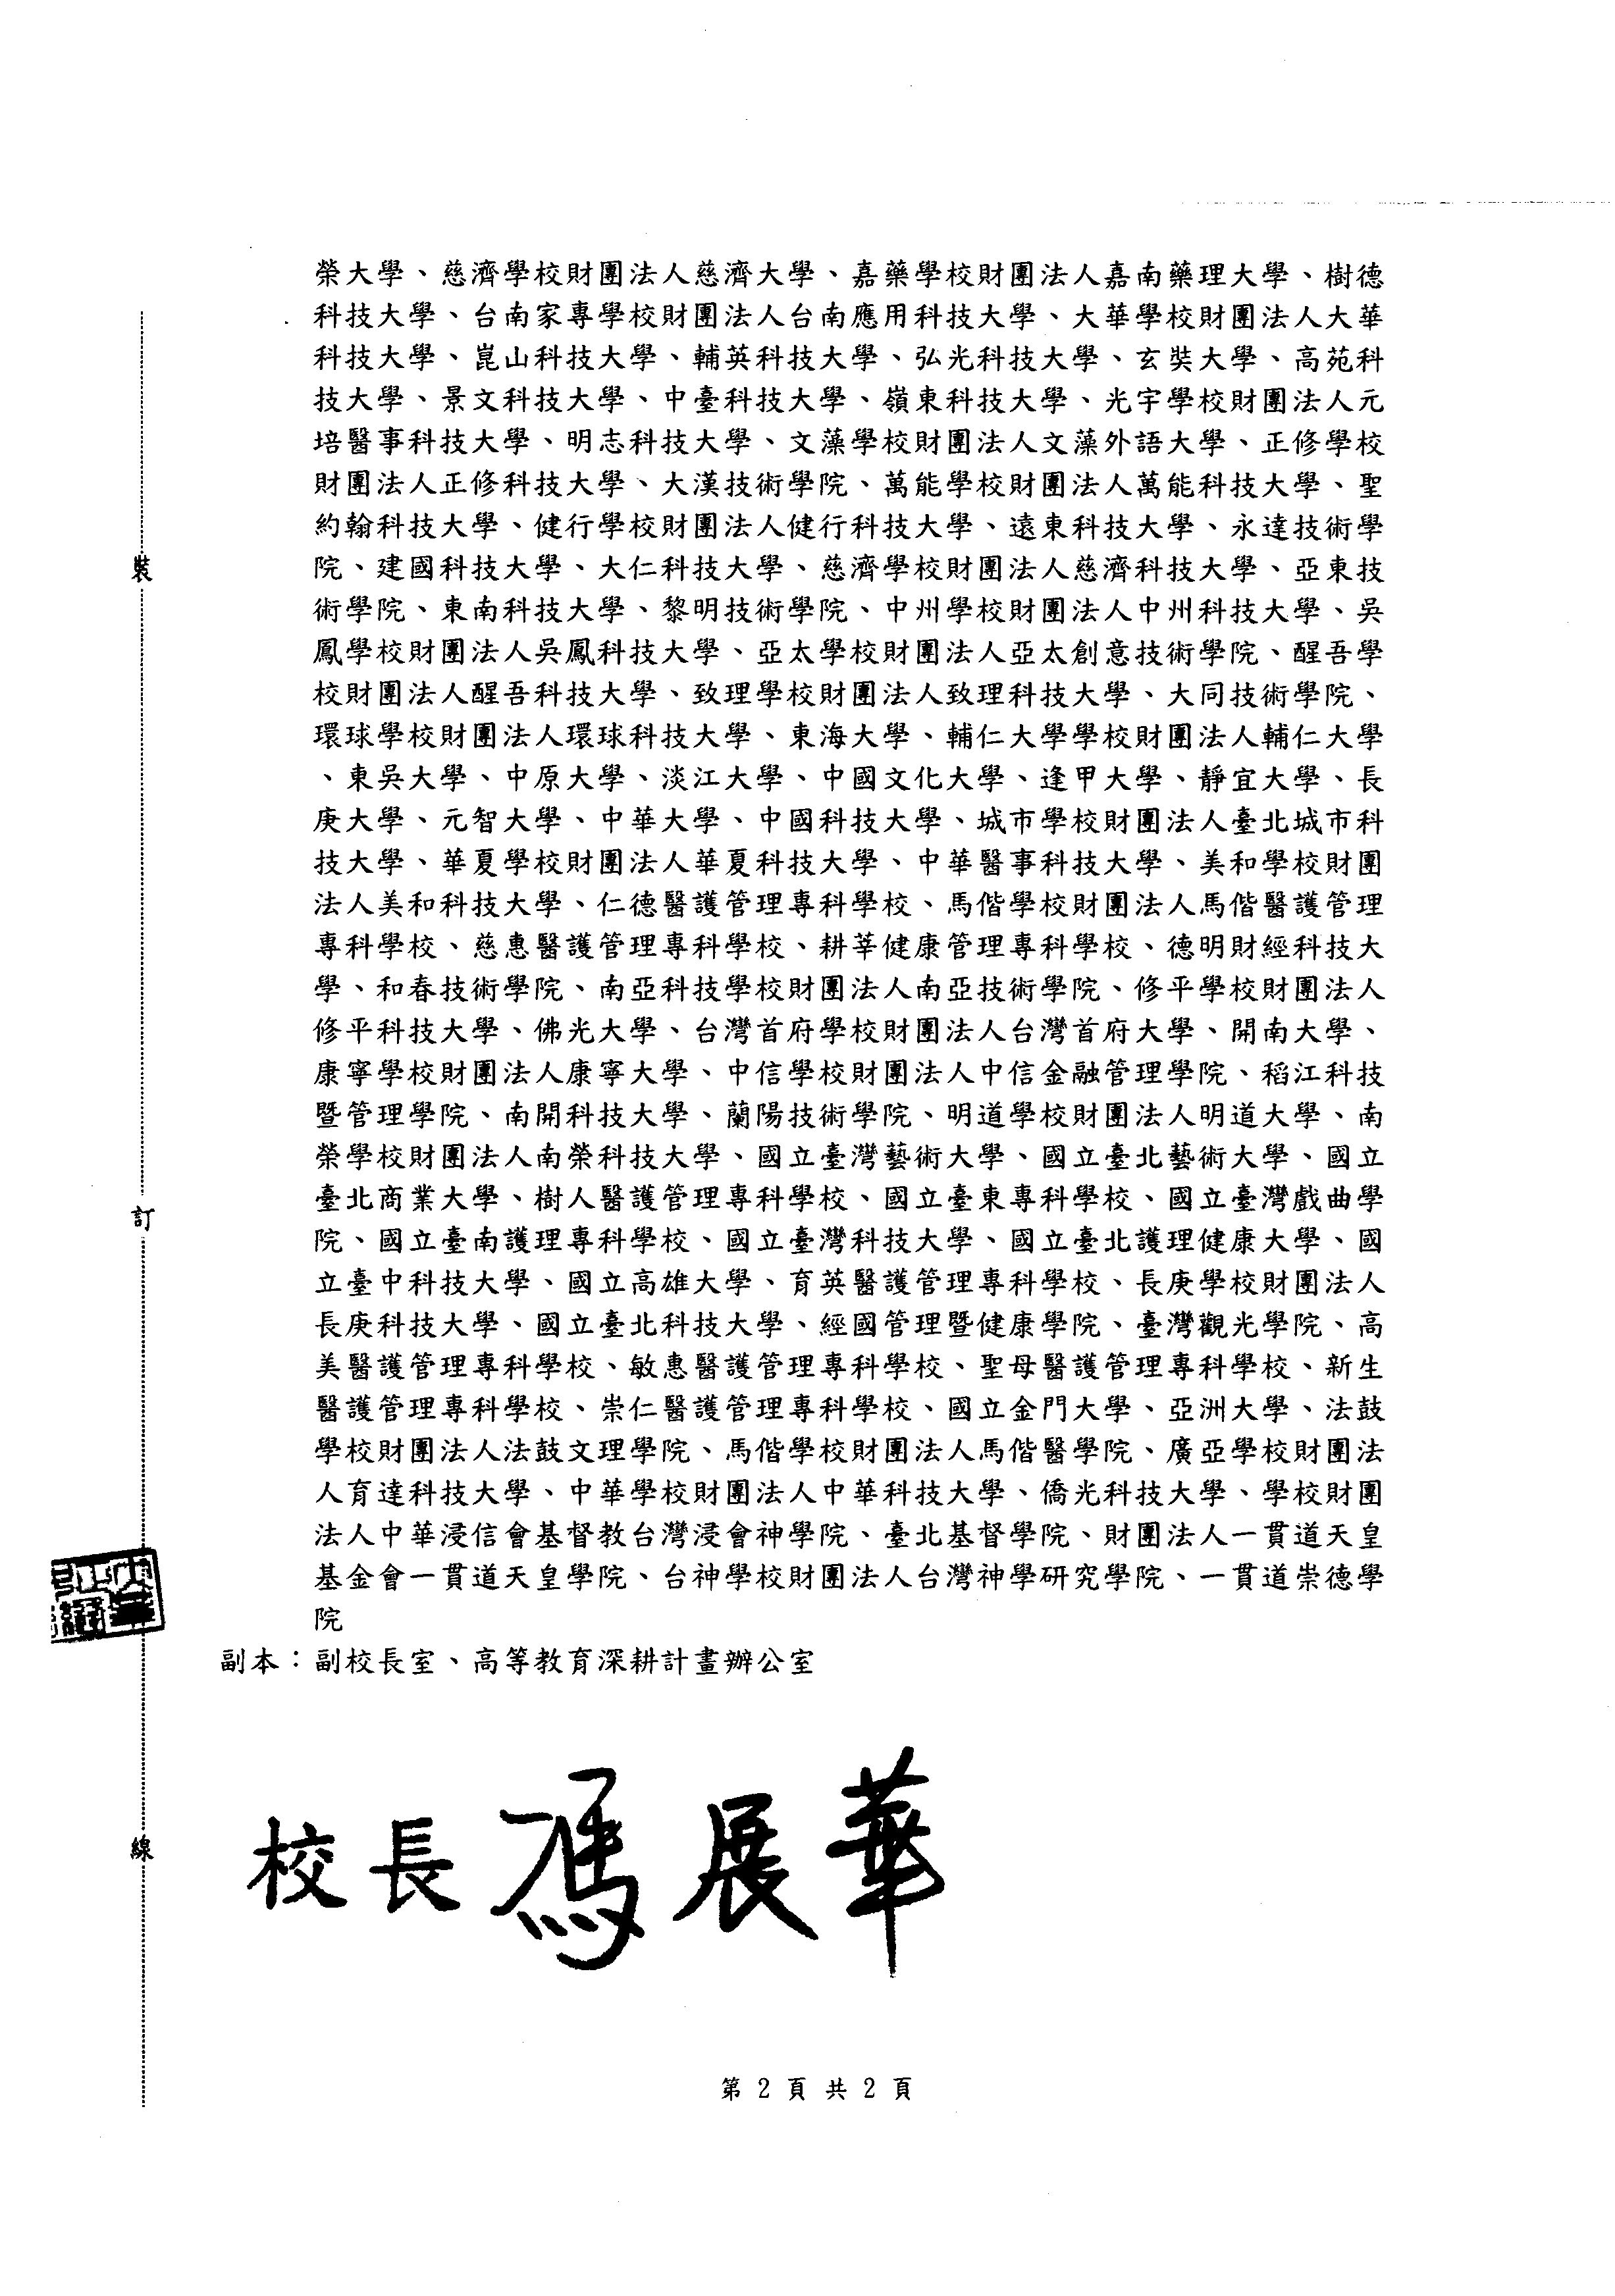 中正大學公文 頁面 2